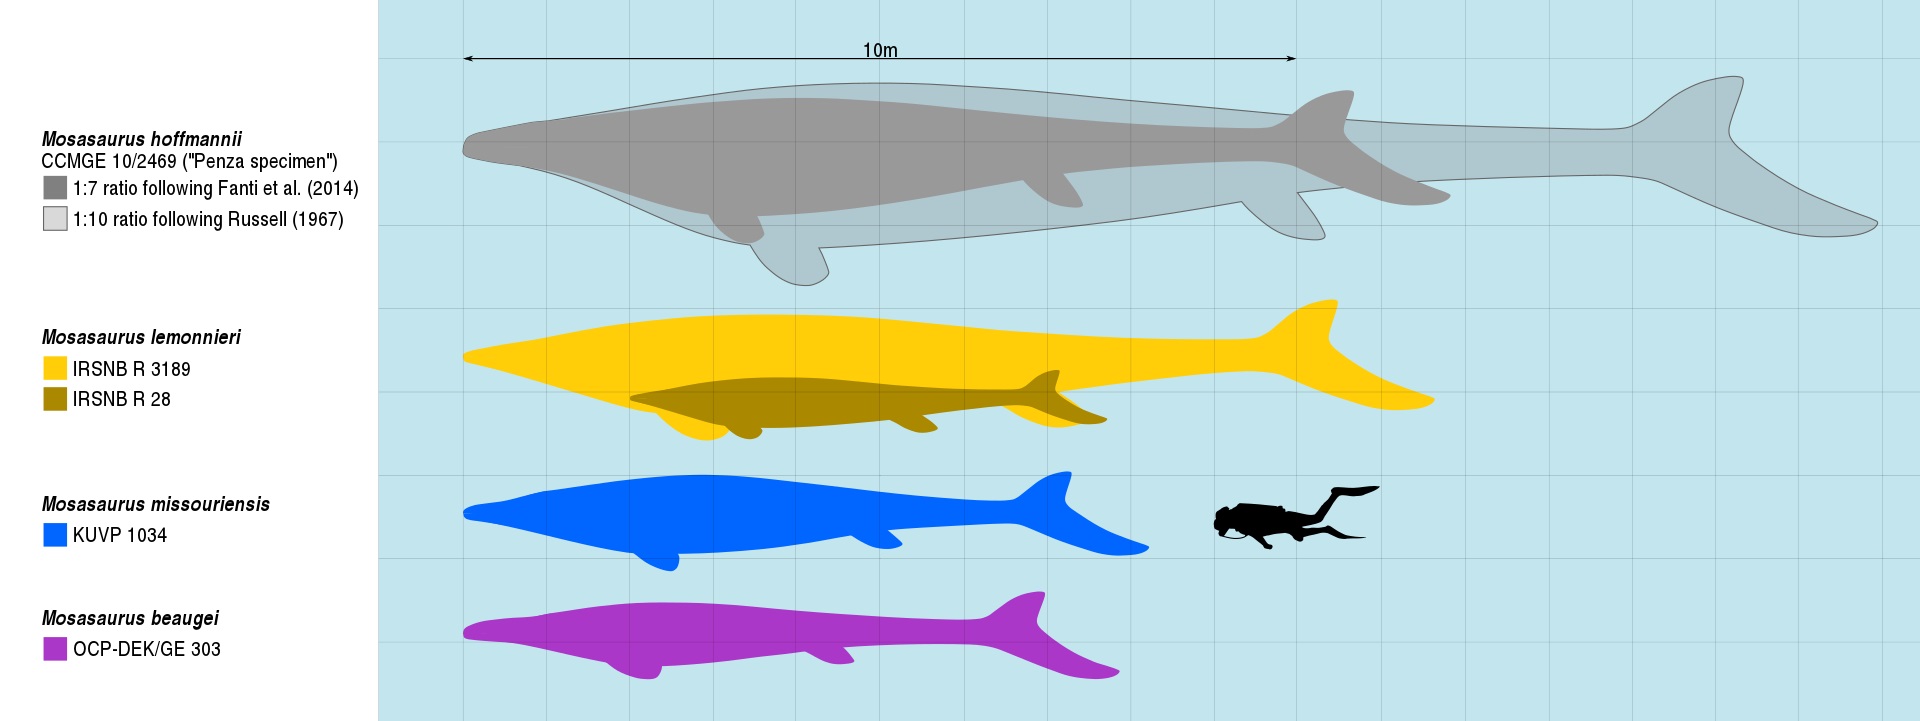 Velikostní porovnání největších známých jedinců několika druhů rodu Mosasaurus a dospělého člověka. Výrazně zde vyniká obří exemplář z ruské Penzy, známý na základě téměř kompletní fosilie dolní čelisti dlouhé 171 cm. Kredit: Slateweasel; Wikipedia (